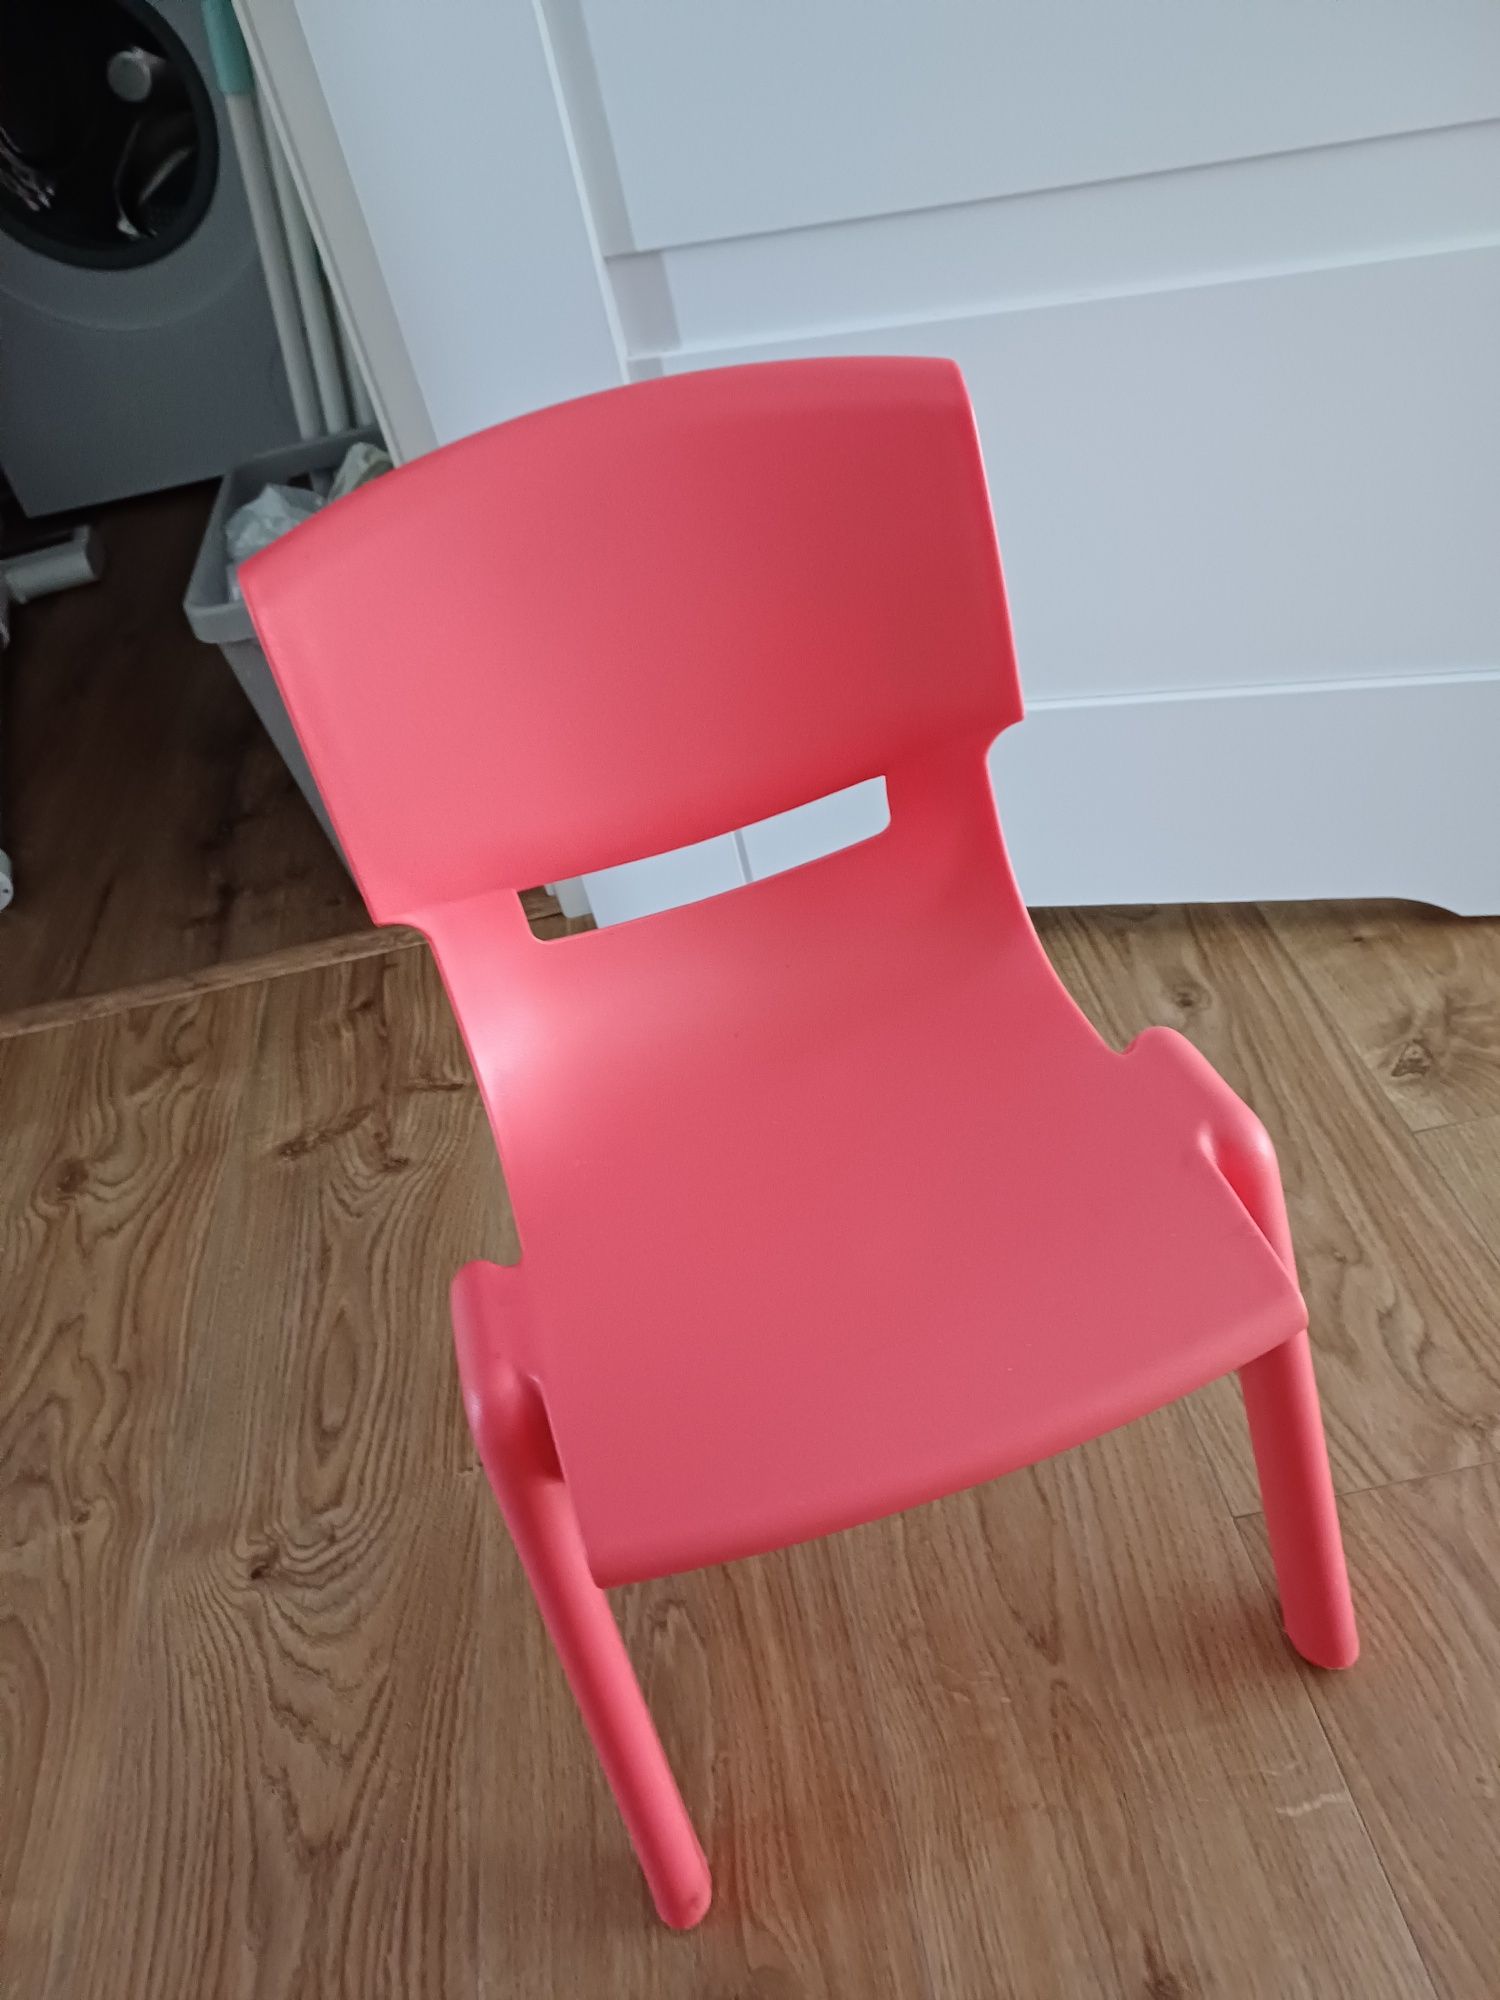 Krzesło Dumi rozm. 1 czerwone